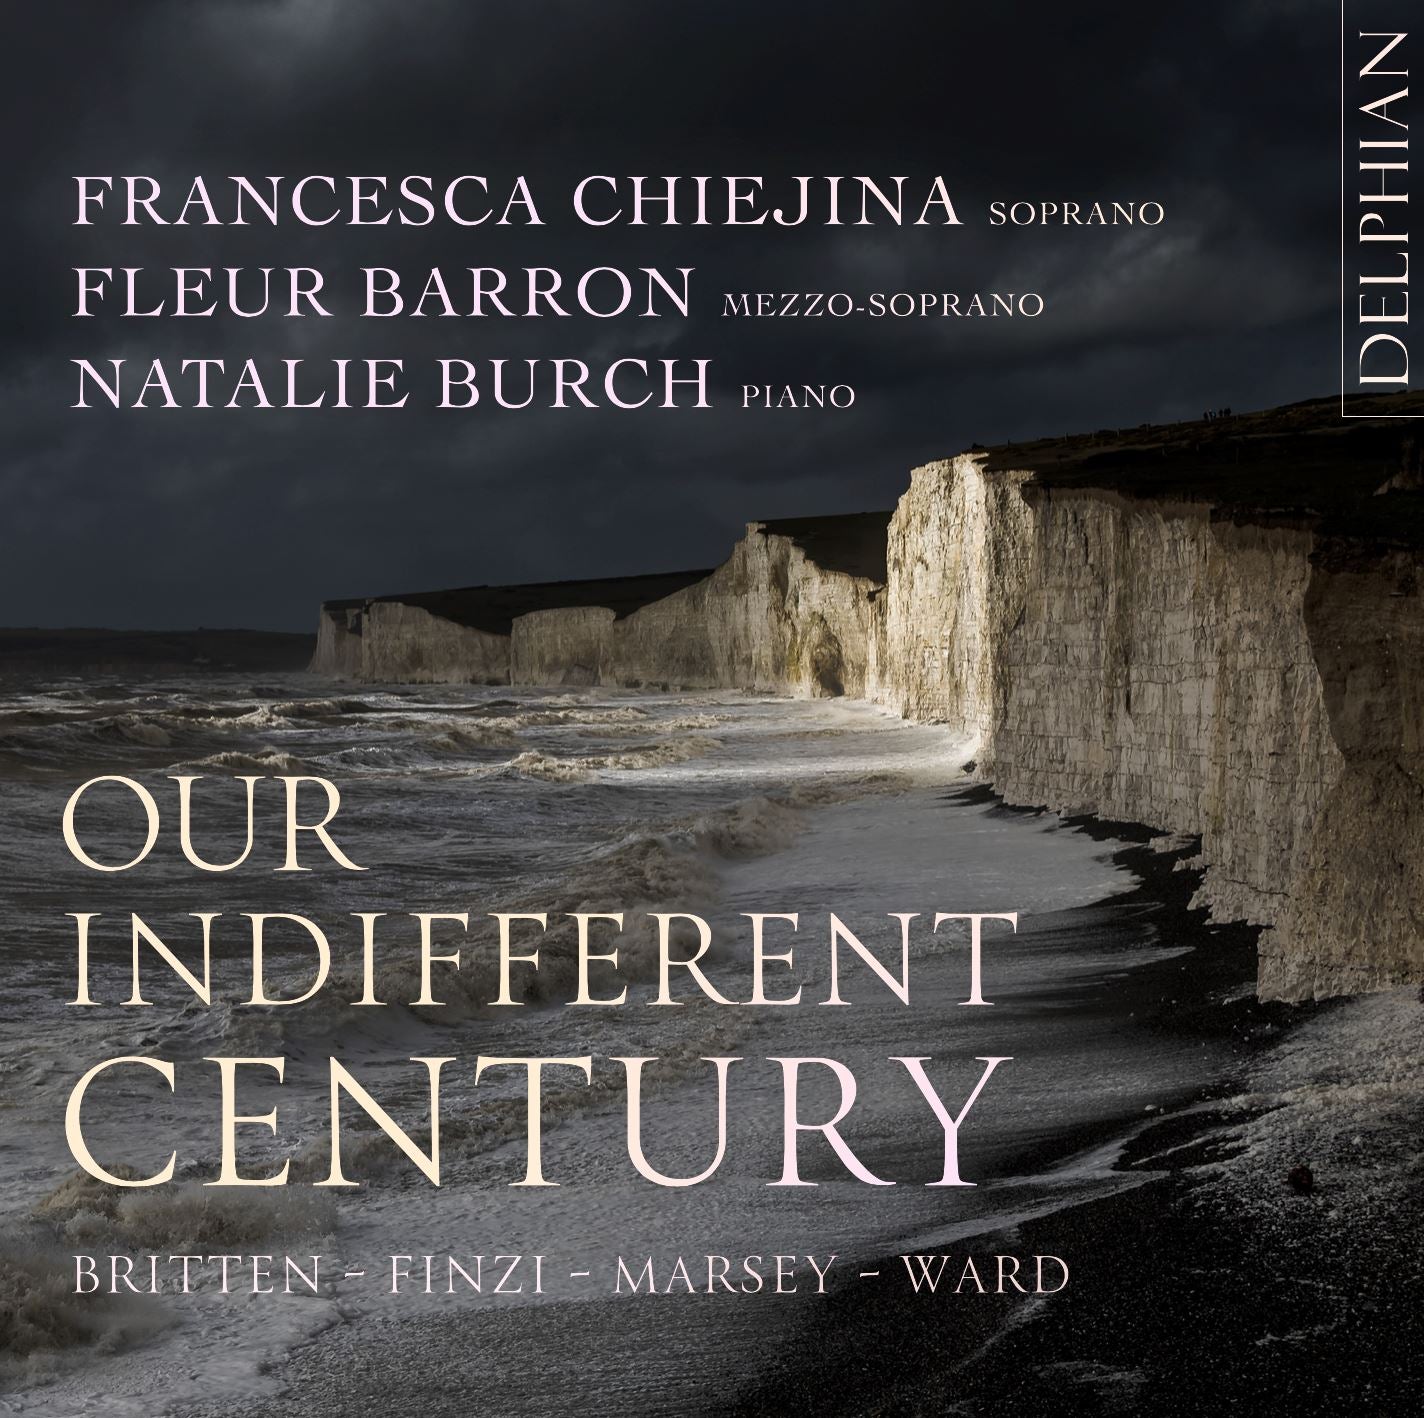 Our Indifferent Century: Britten | Finzi | Marsey | Ward CD Delphian Records